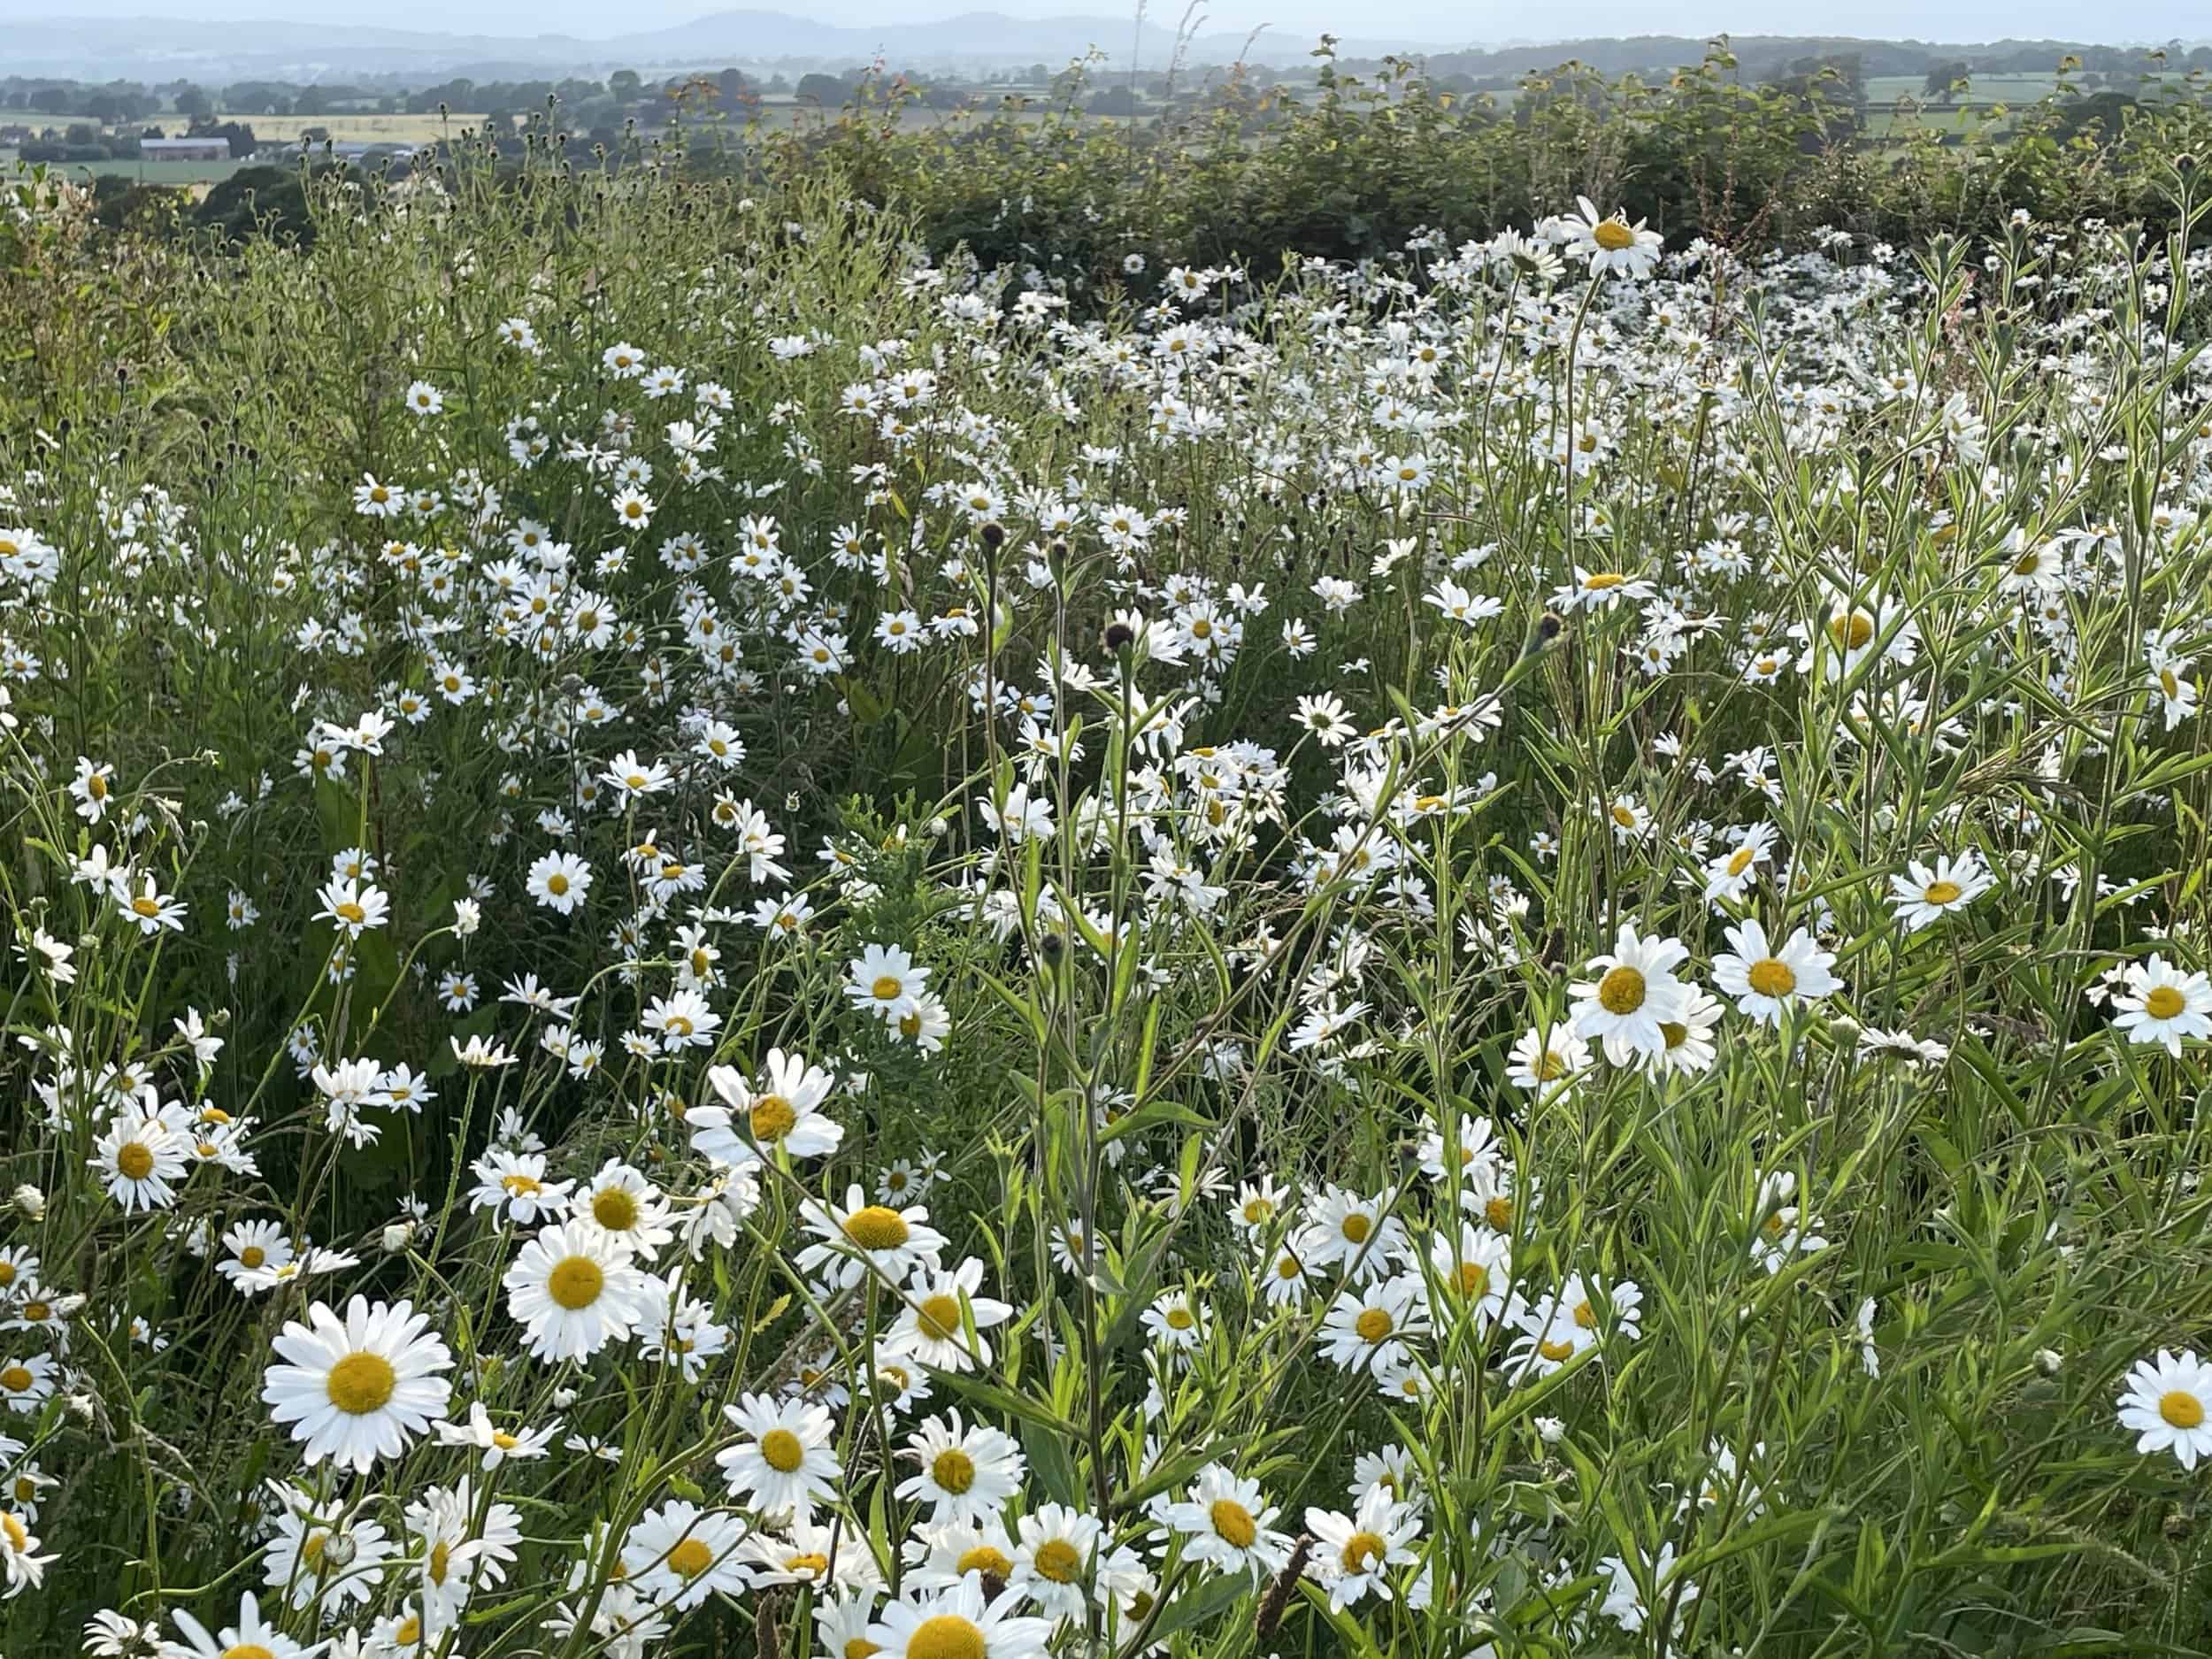 white daisy flowers in a field